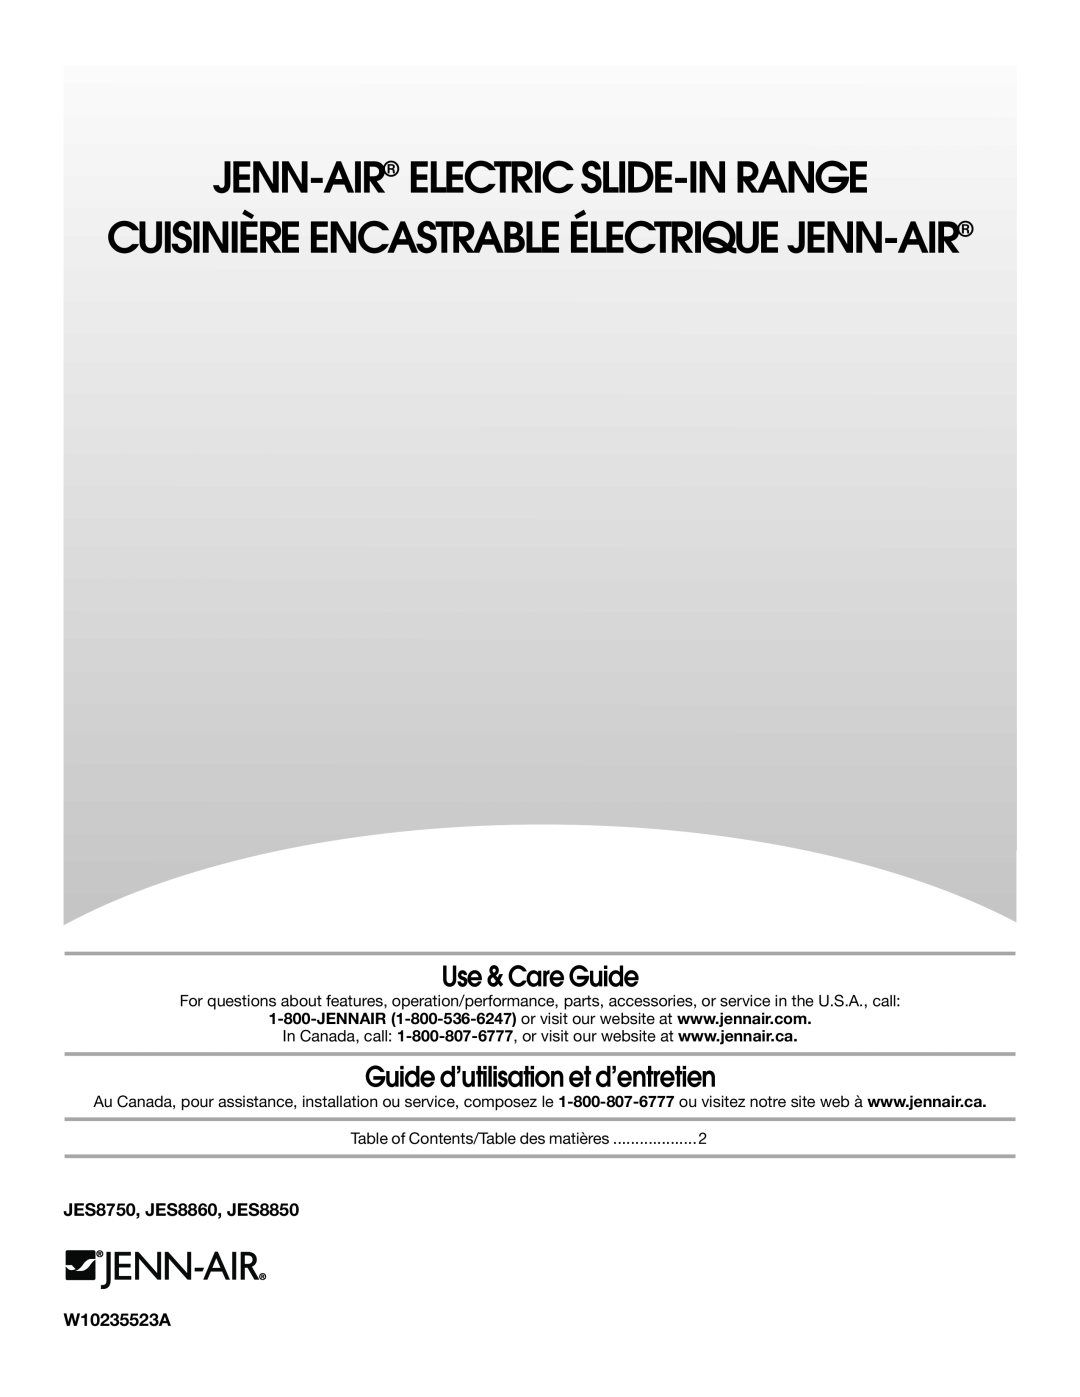 Jenn-Air manual Use & Care Guide, Guide d’utilisation et d’entretien, JES8750, JES8860, JES8850, W10235523A 